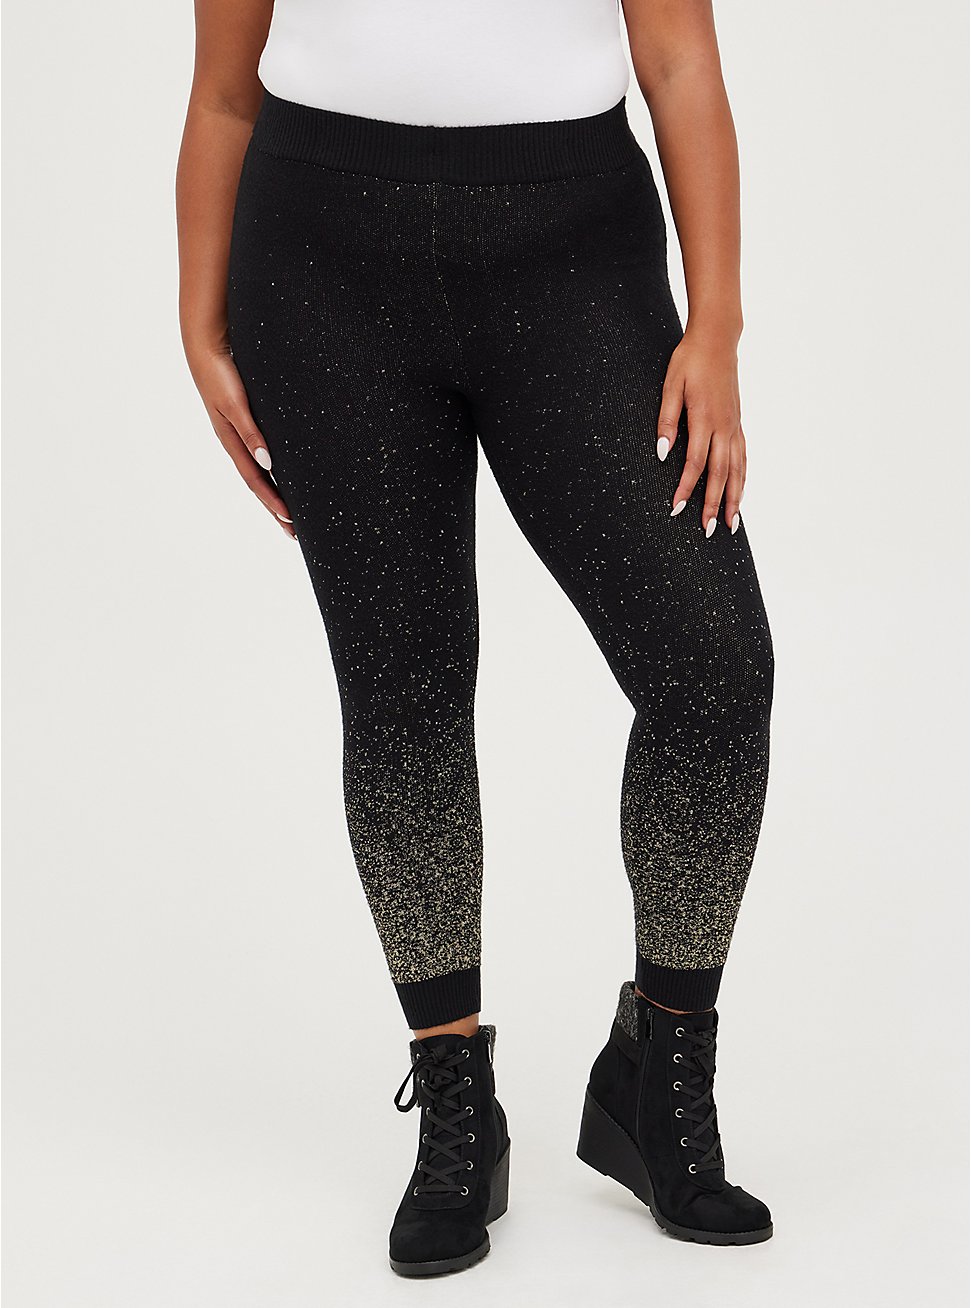 Plus Size Platinum Sweater Legging with Lurex - Black, BLACK, hi-res